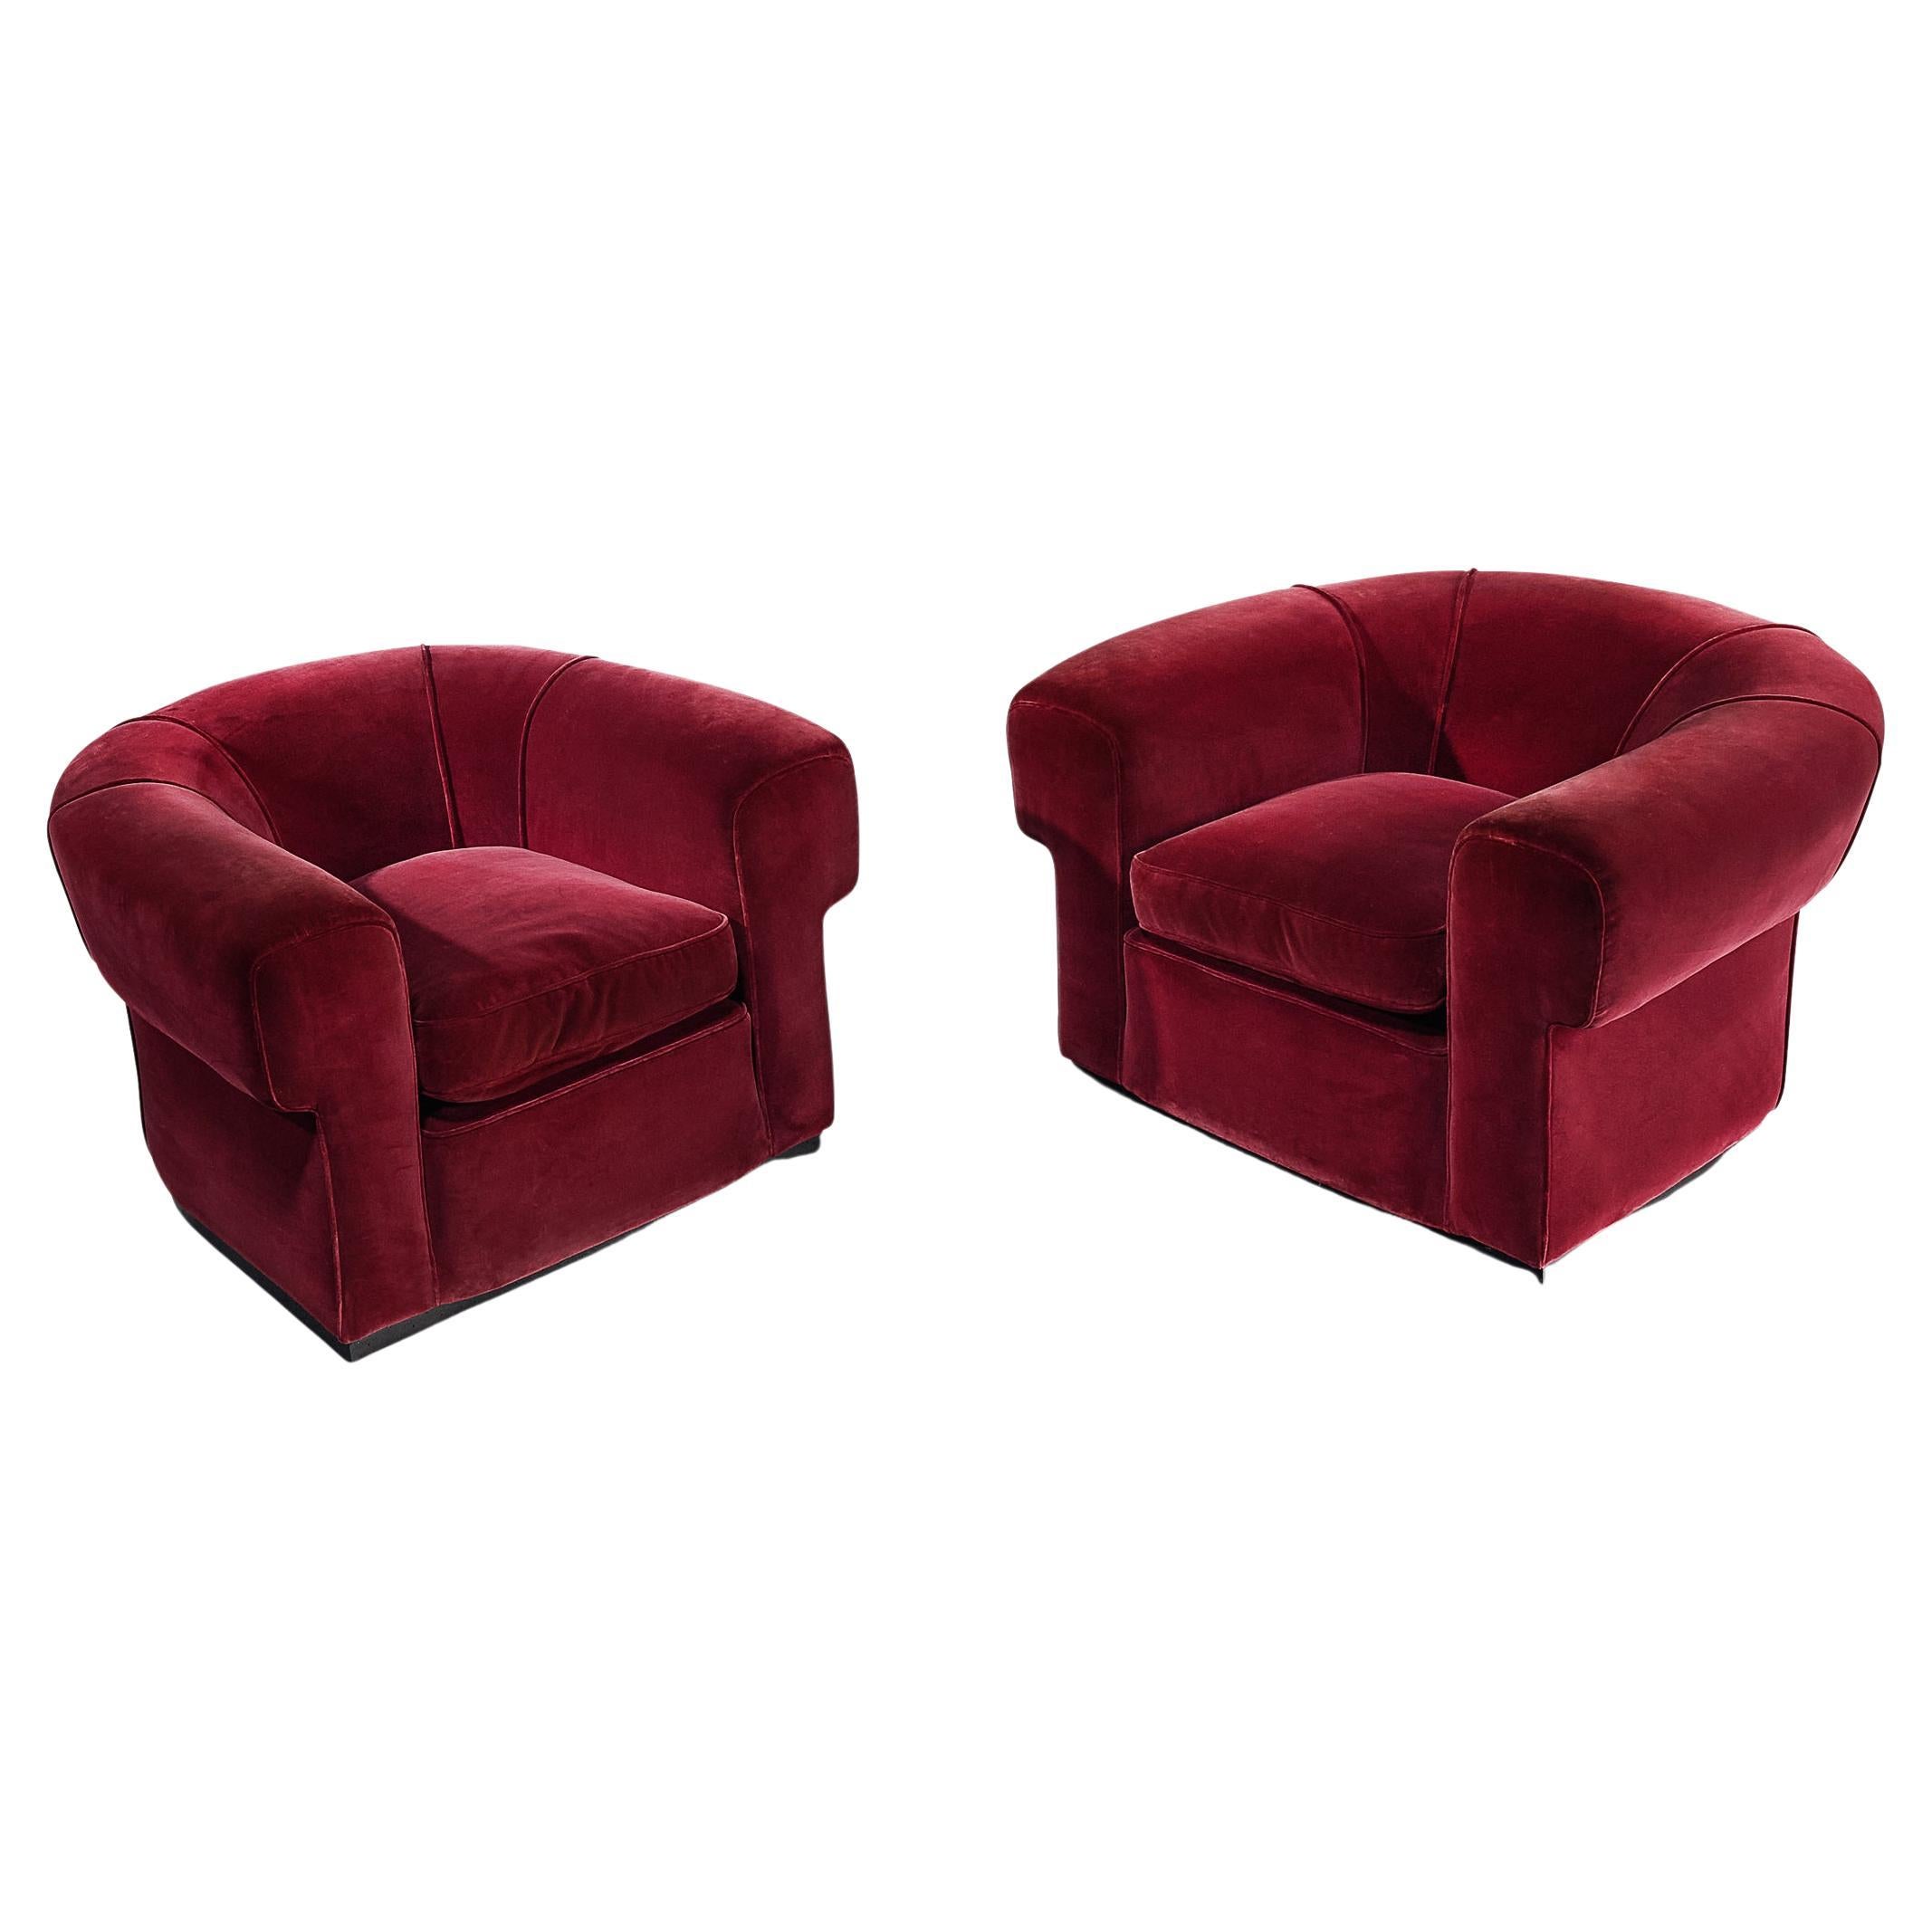 Italian Art Deco Pair of Lounge Chairs in Burgundy Velvet For Sale